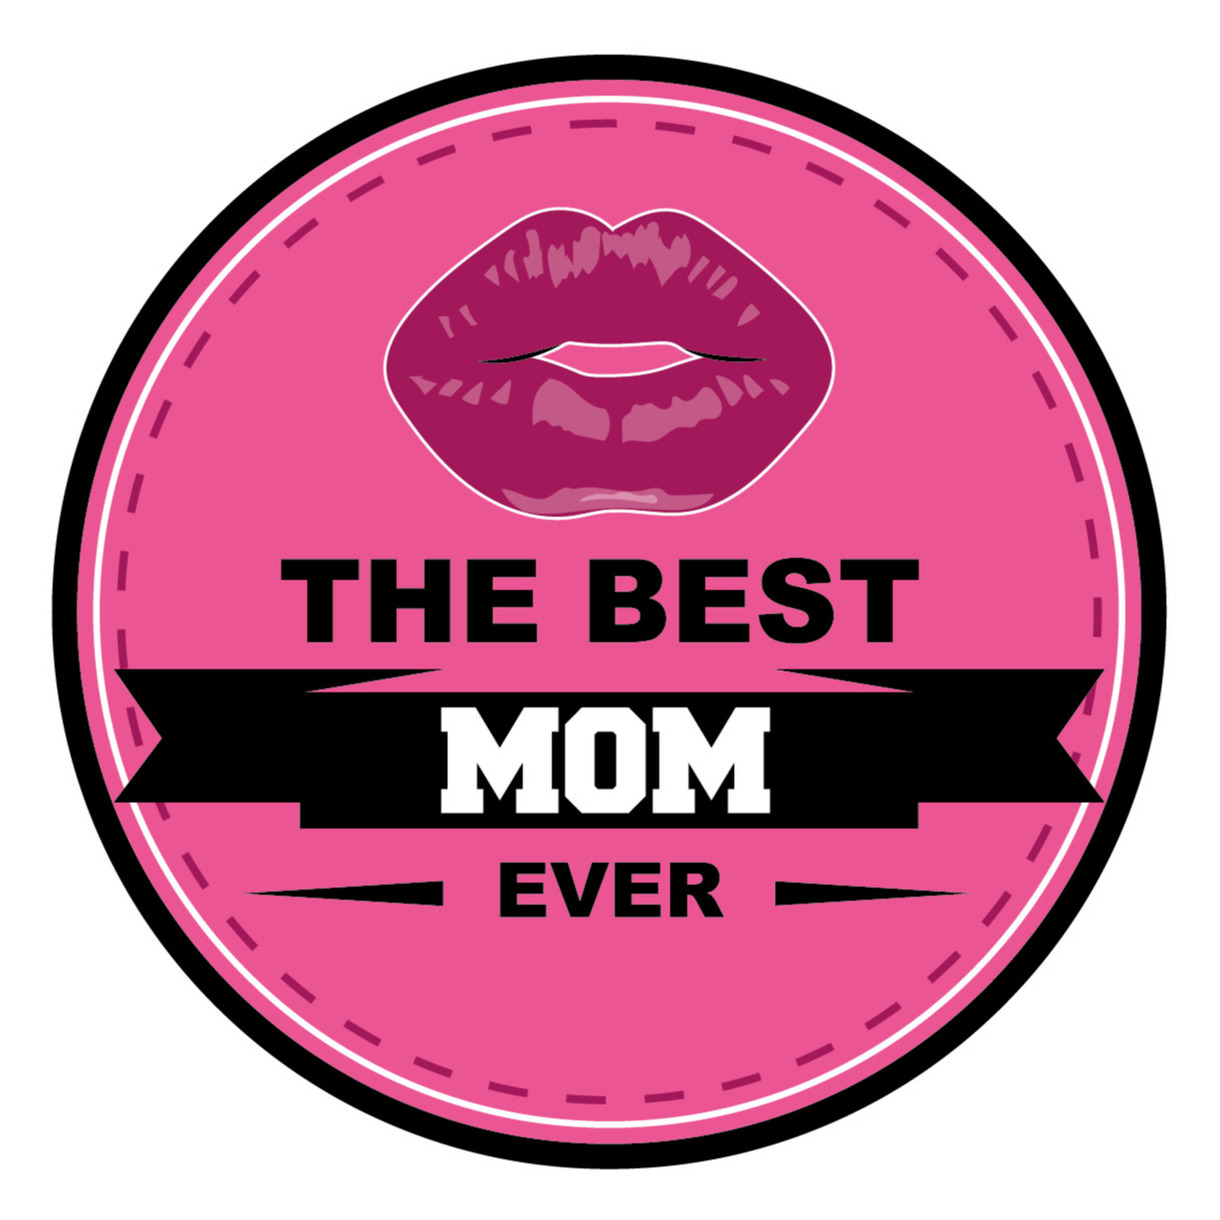 15x stuks Moederdag bierviltjes the best mom ever onderzetters roze